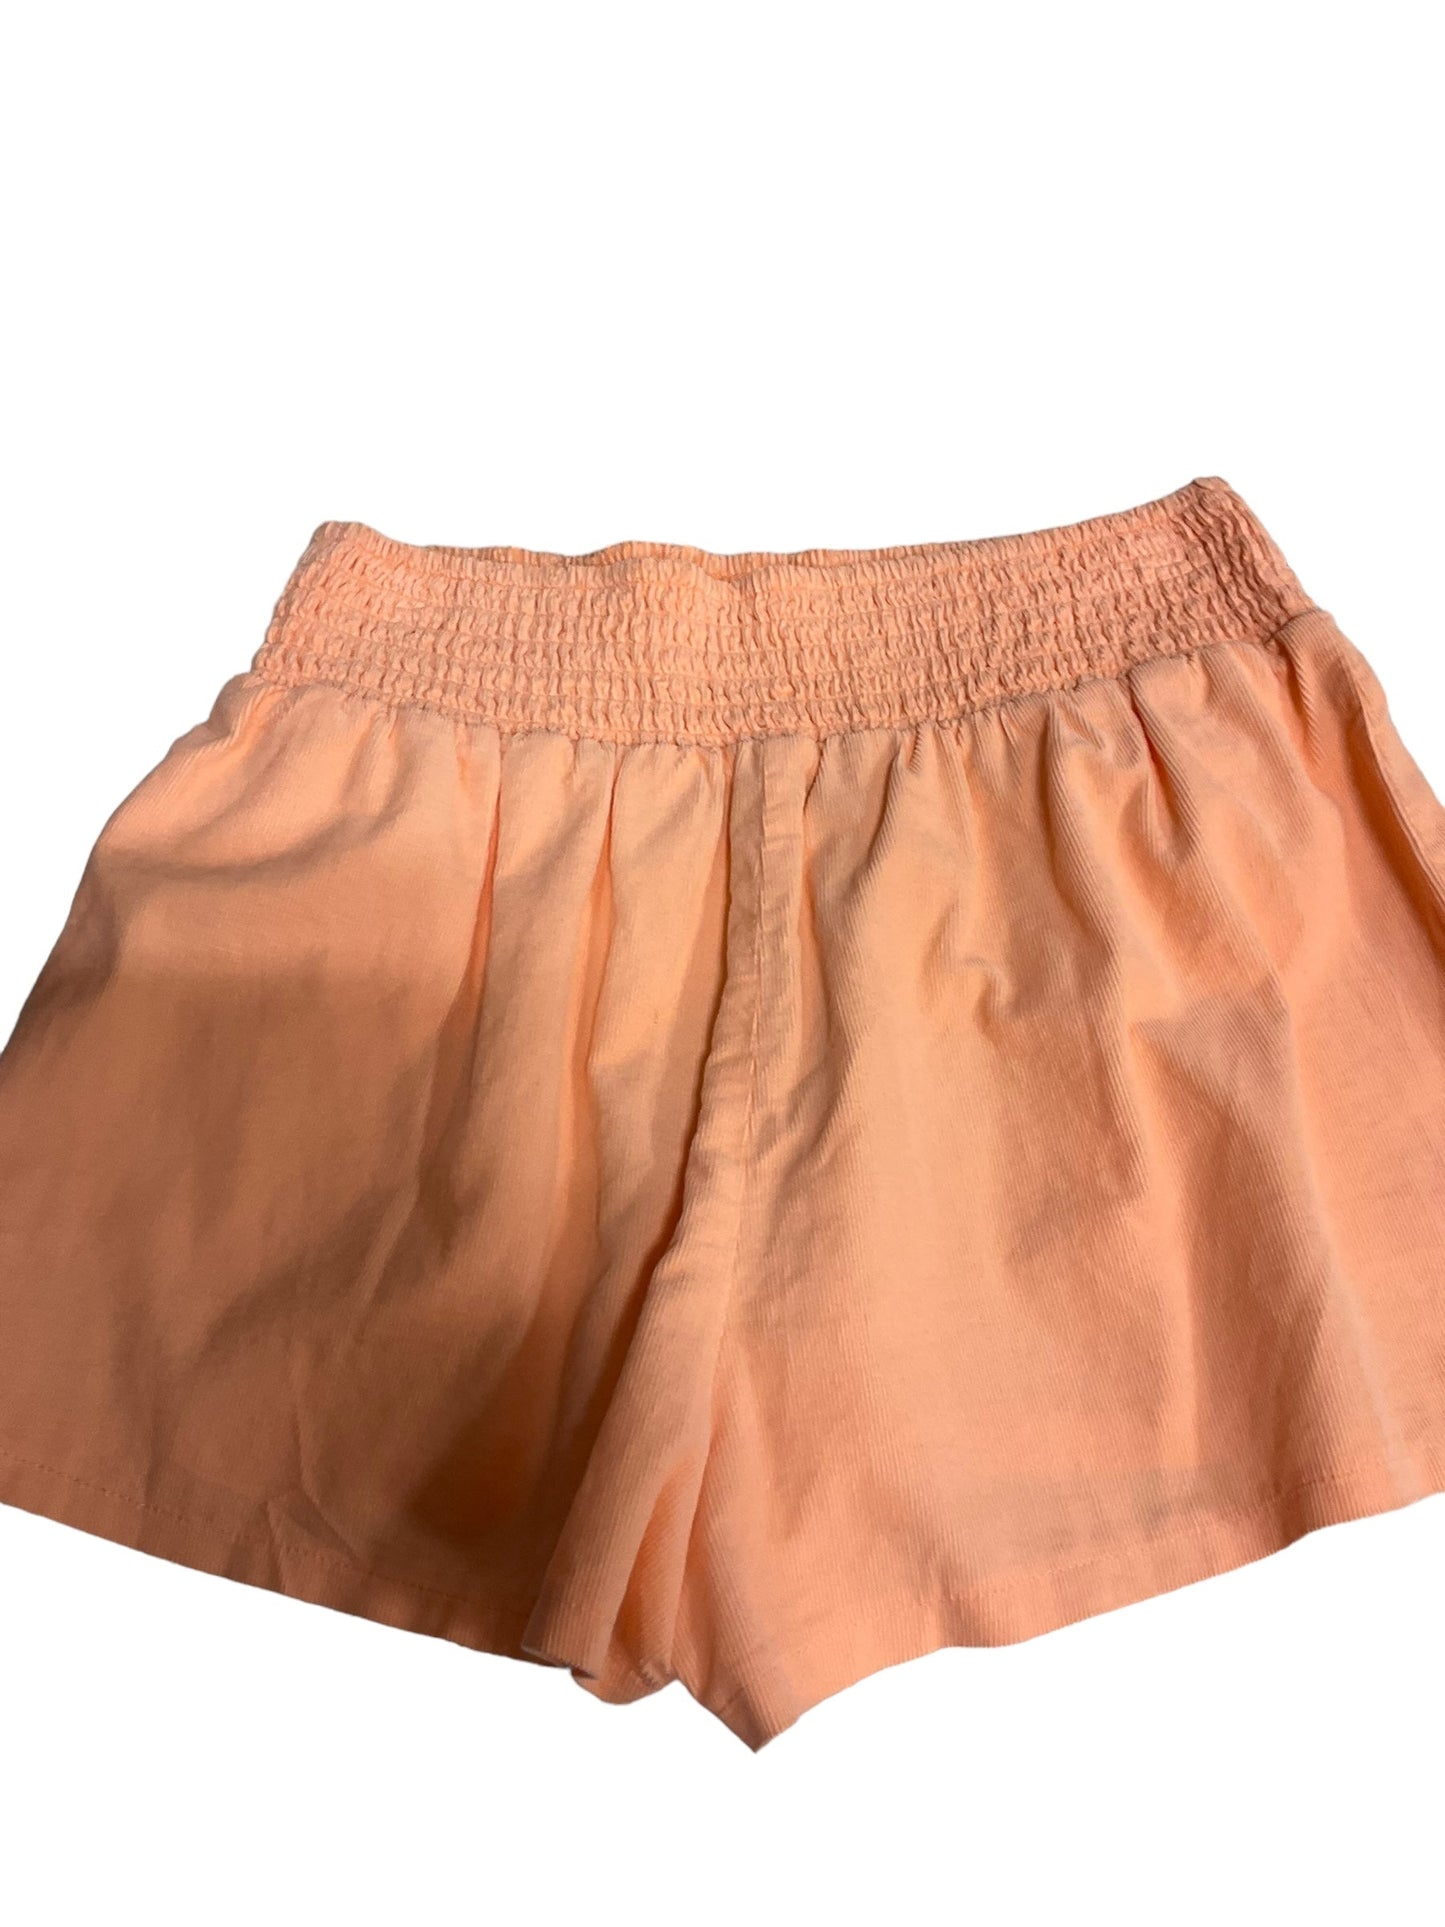 Orange Shorts Wild Fable, Size S